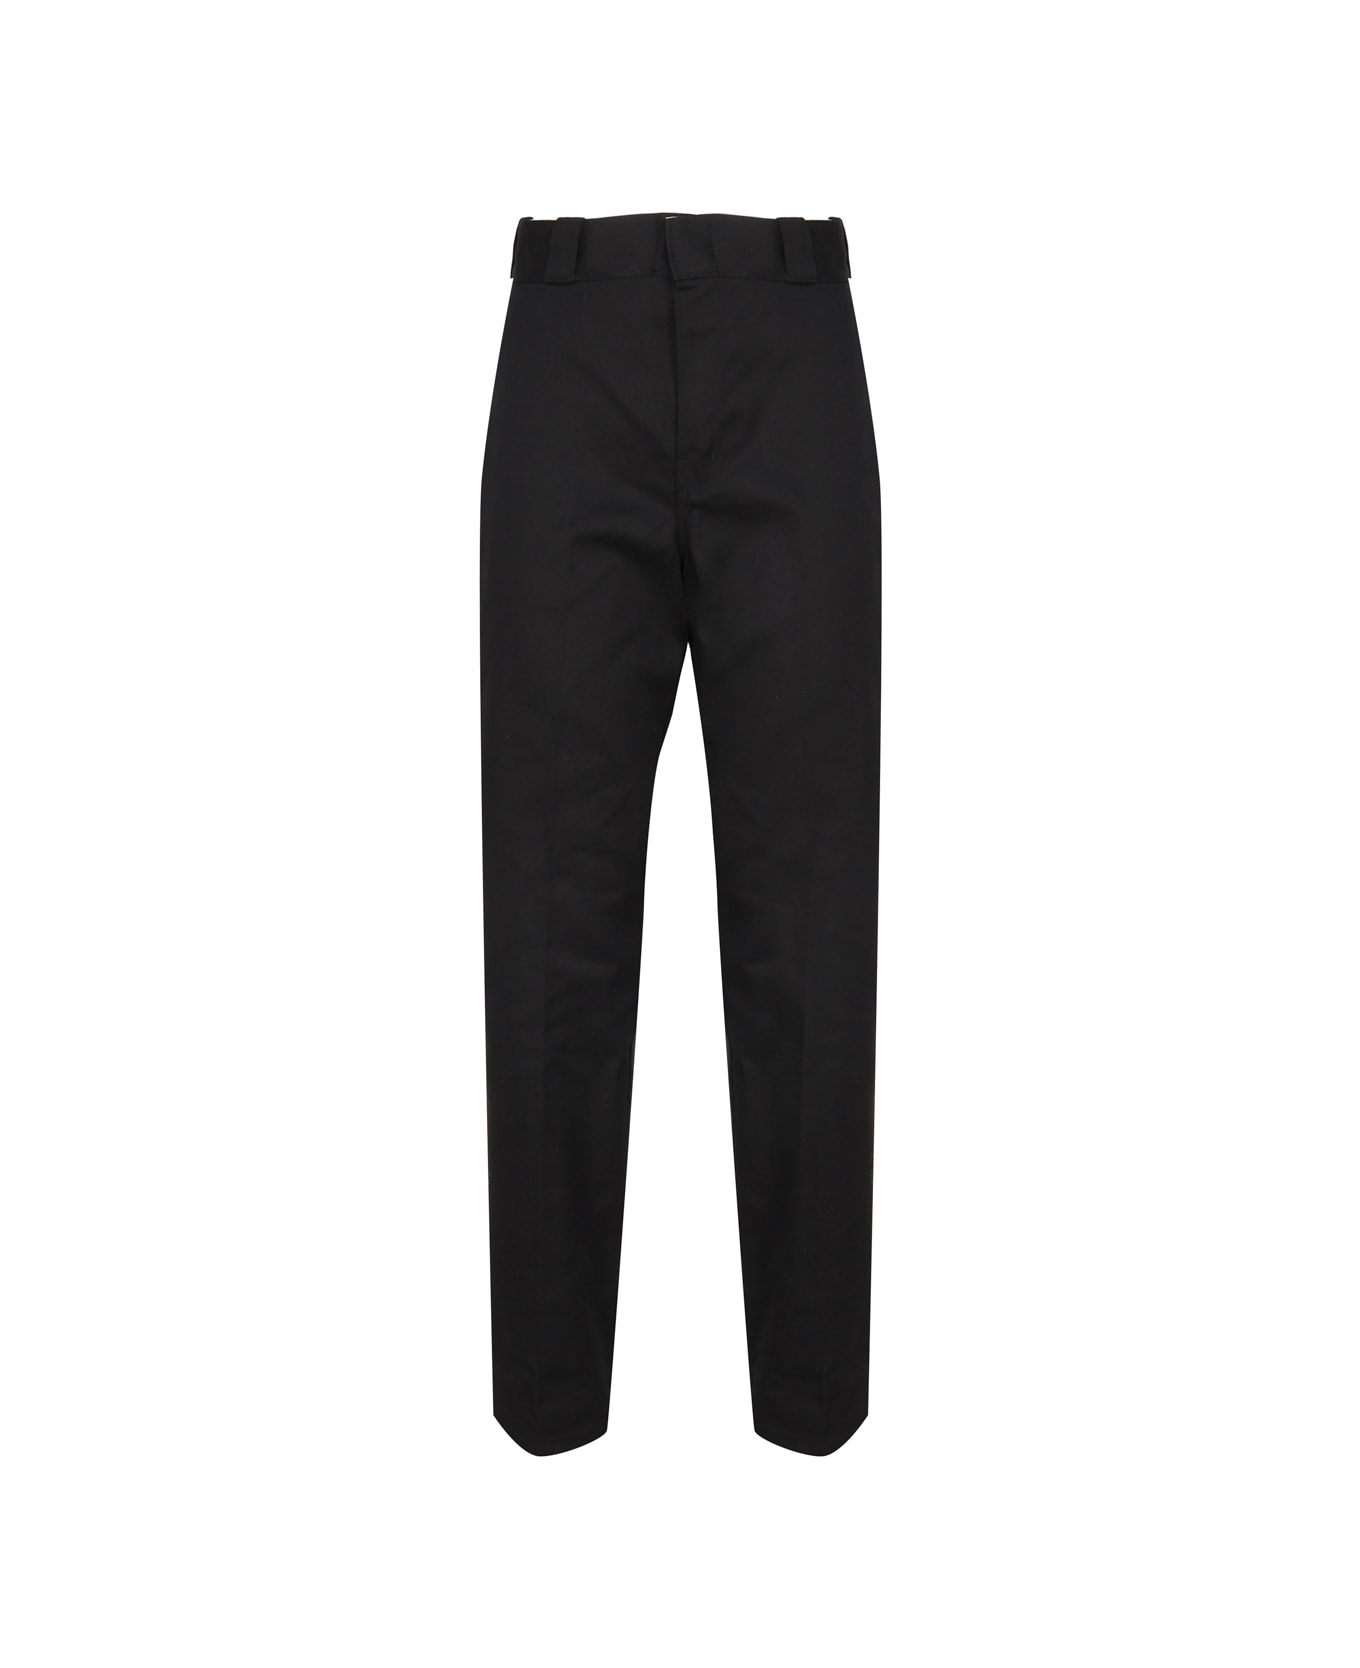 Dickies Work Trousers 874 - Black